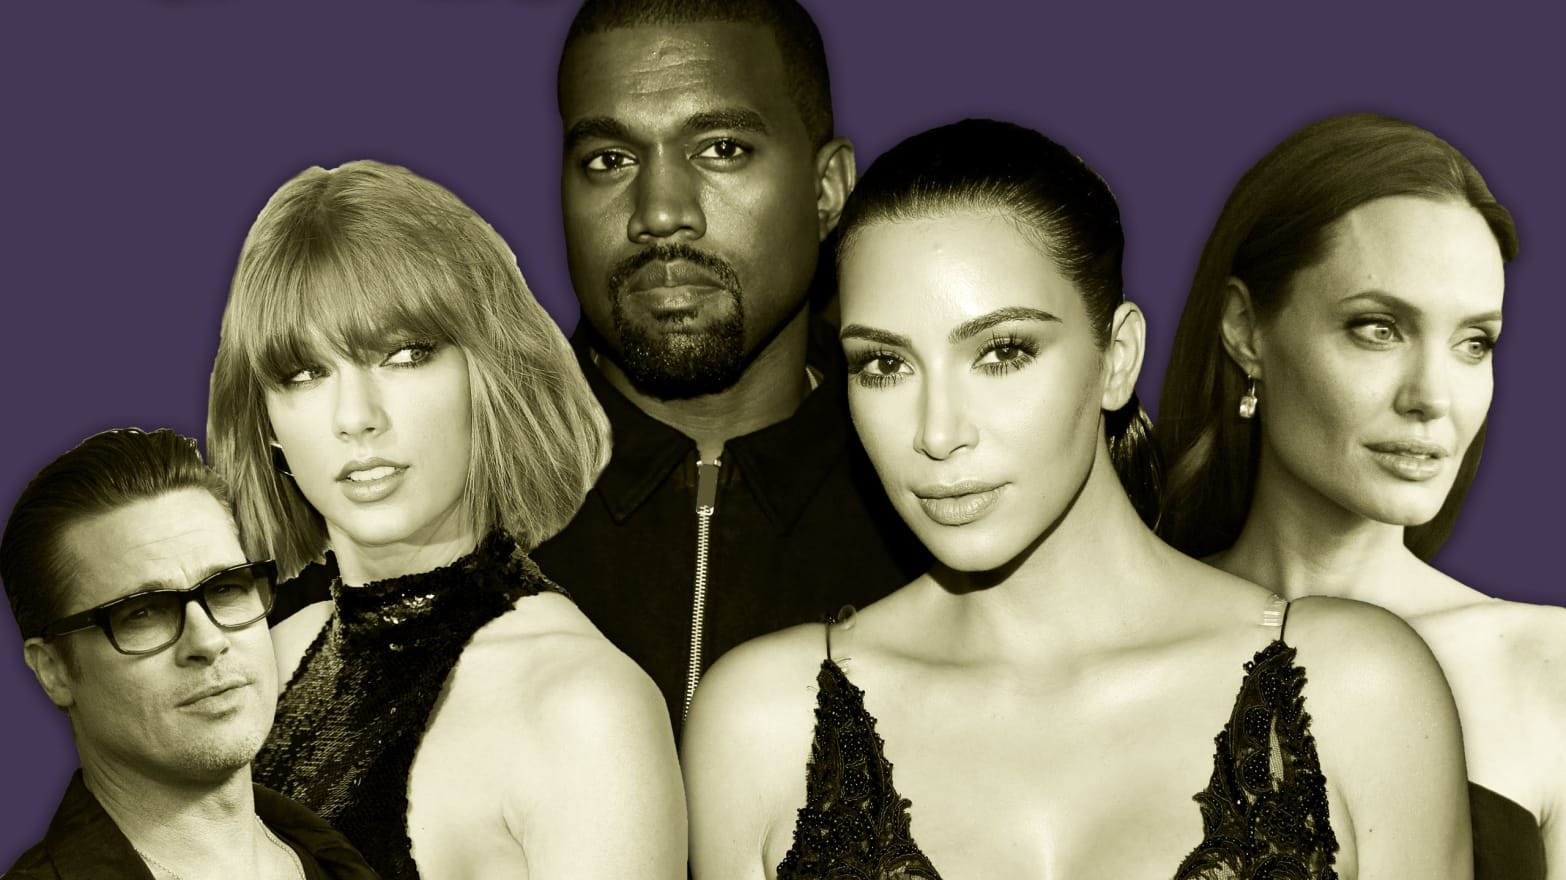 Kim Kardashian West's Spanx struggle, Things To Do